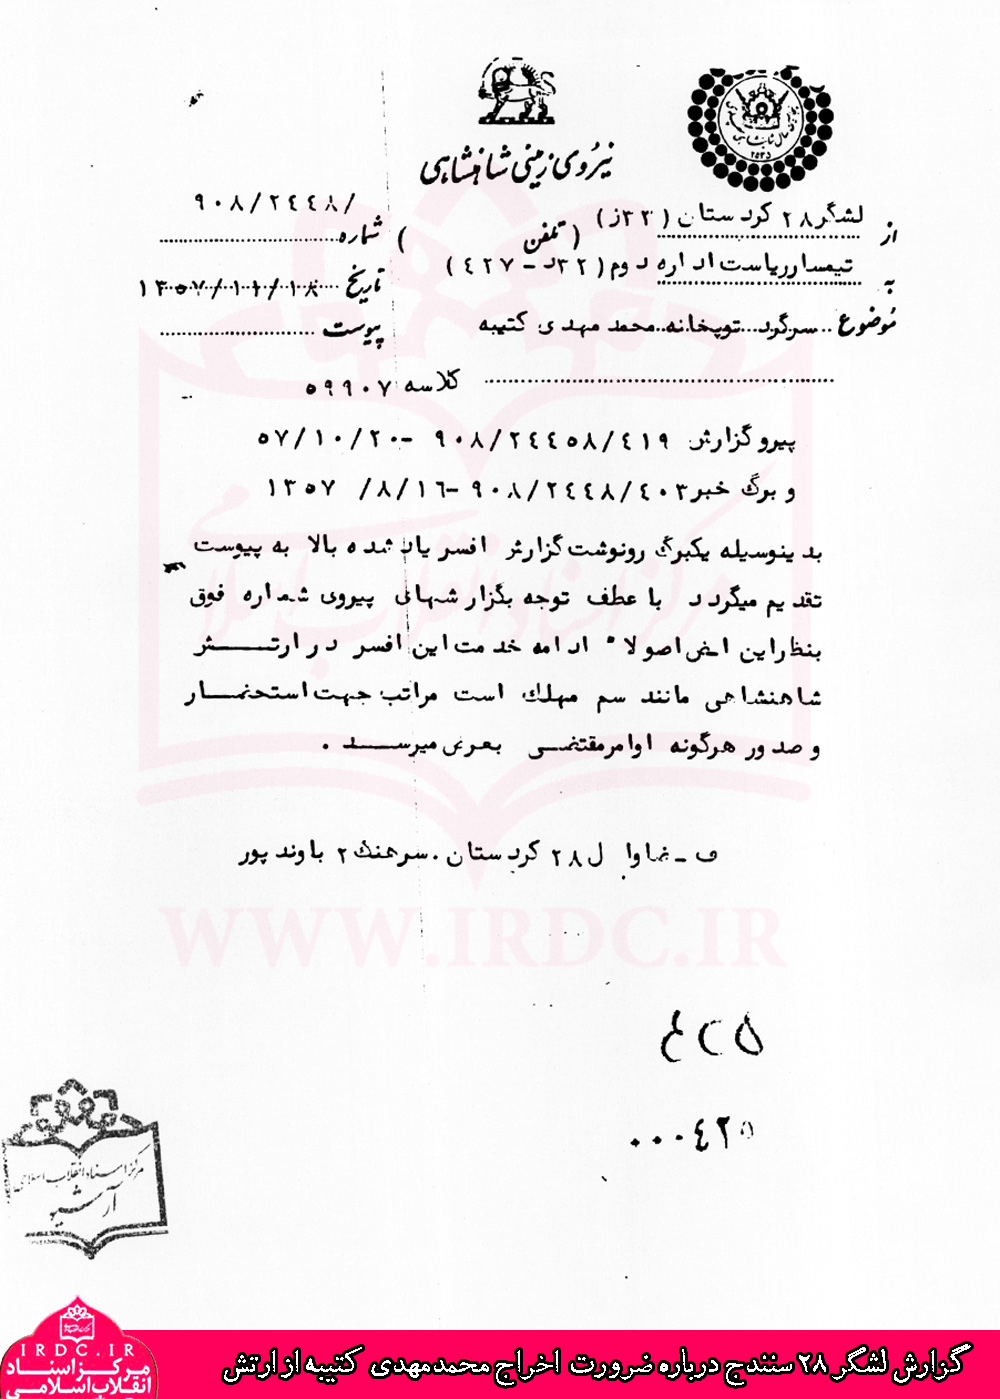 مروری بر زندگی و مبارزات سرهنگ محمدمهدی کتیبه